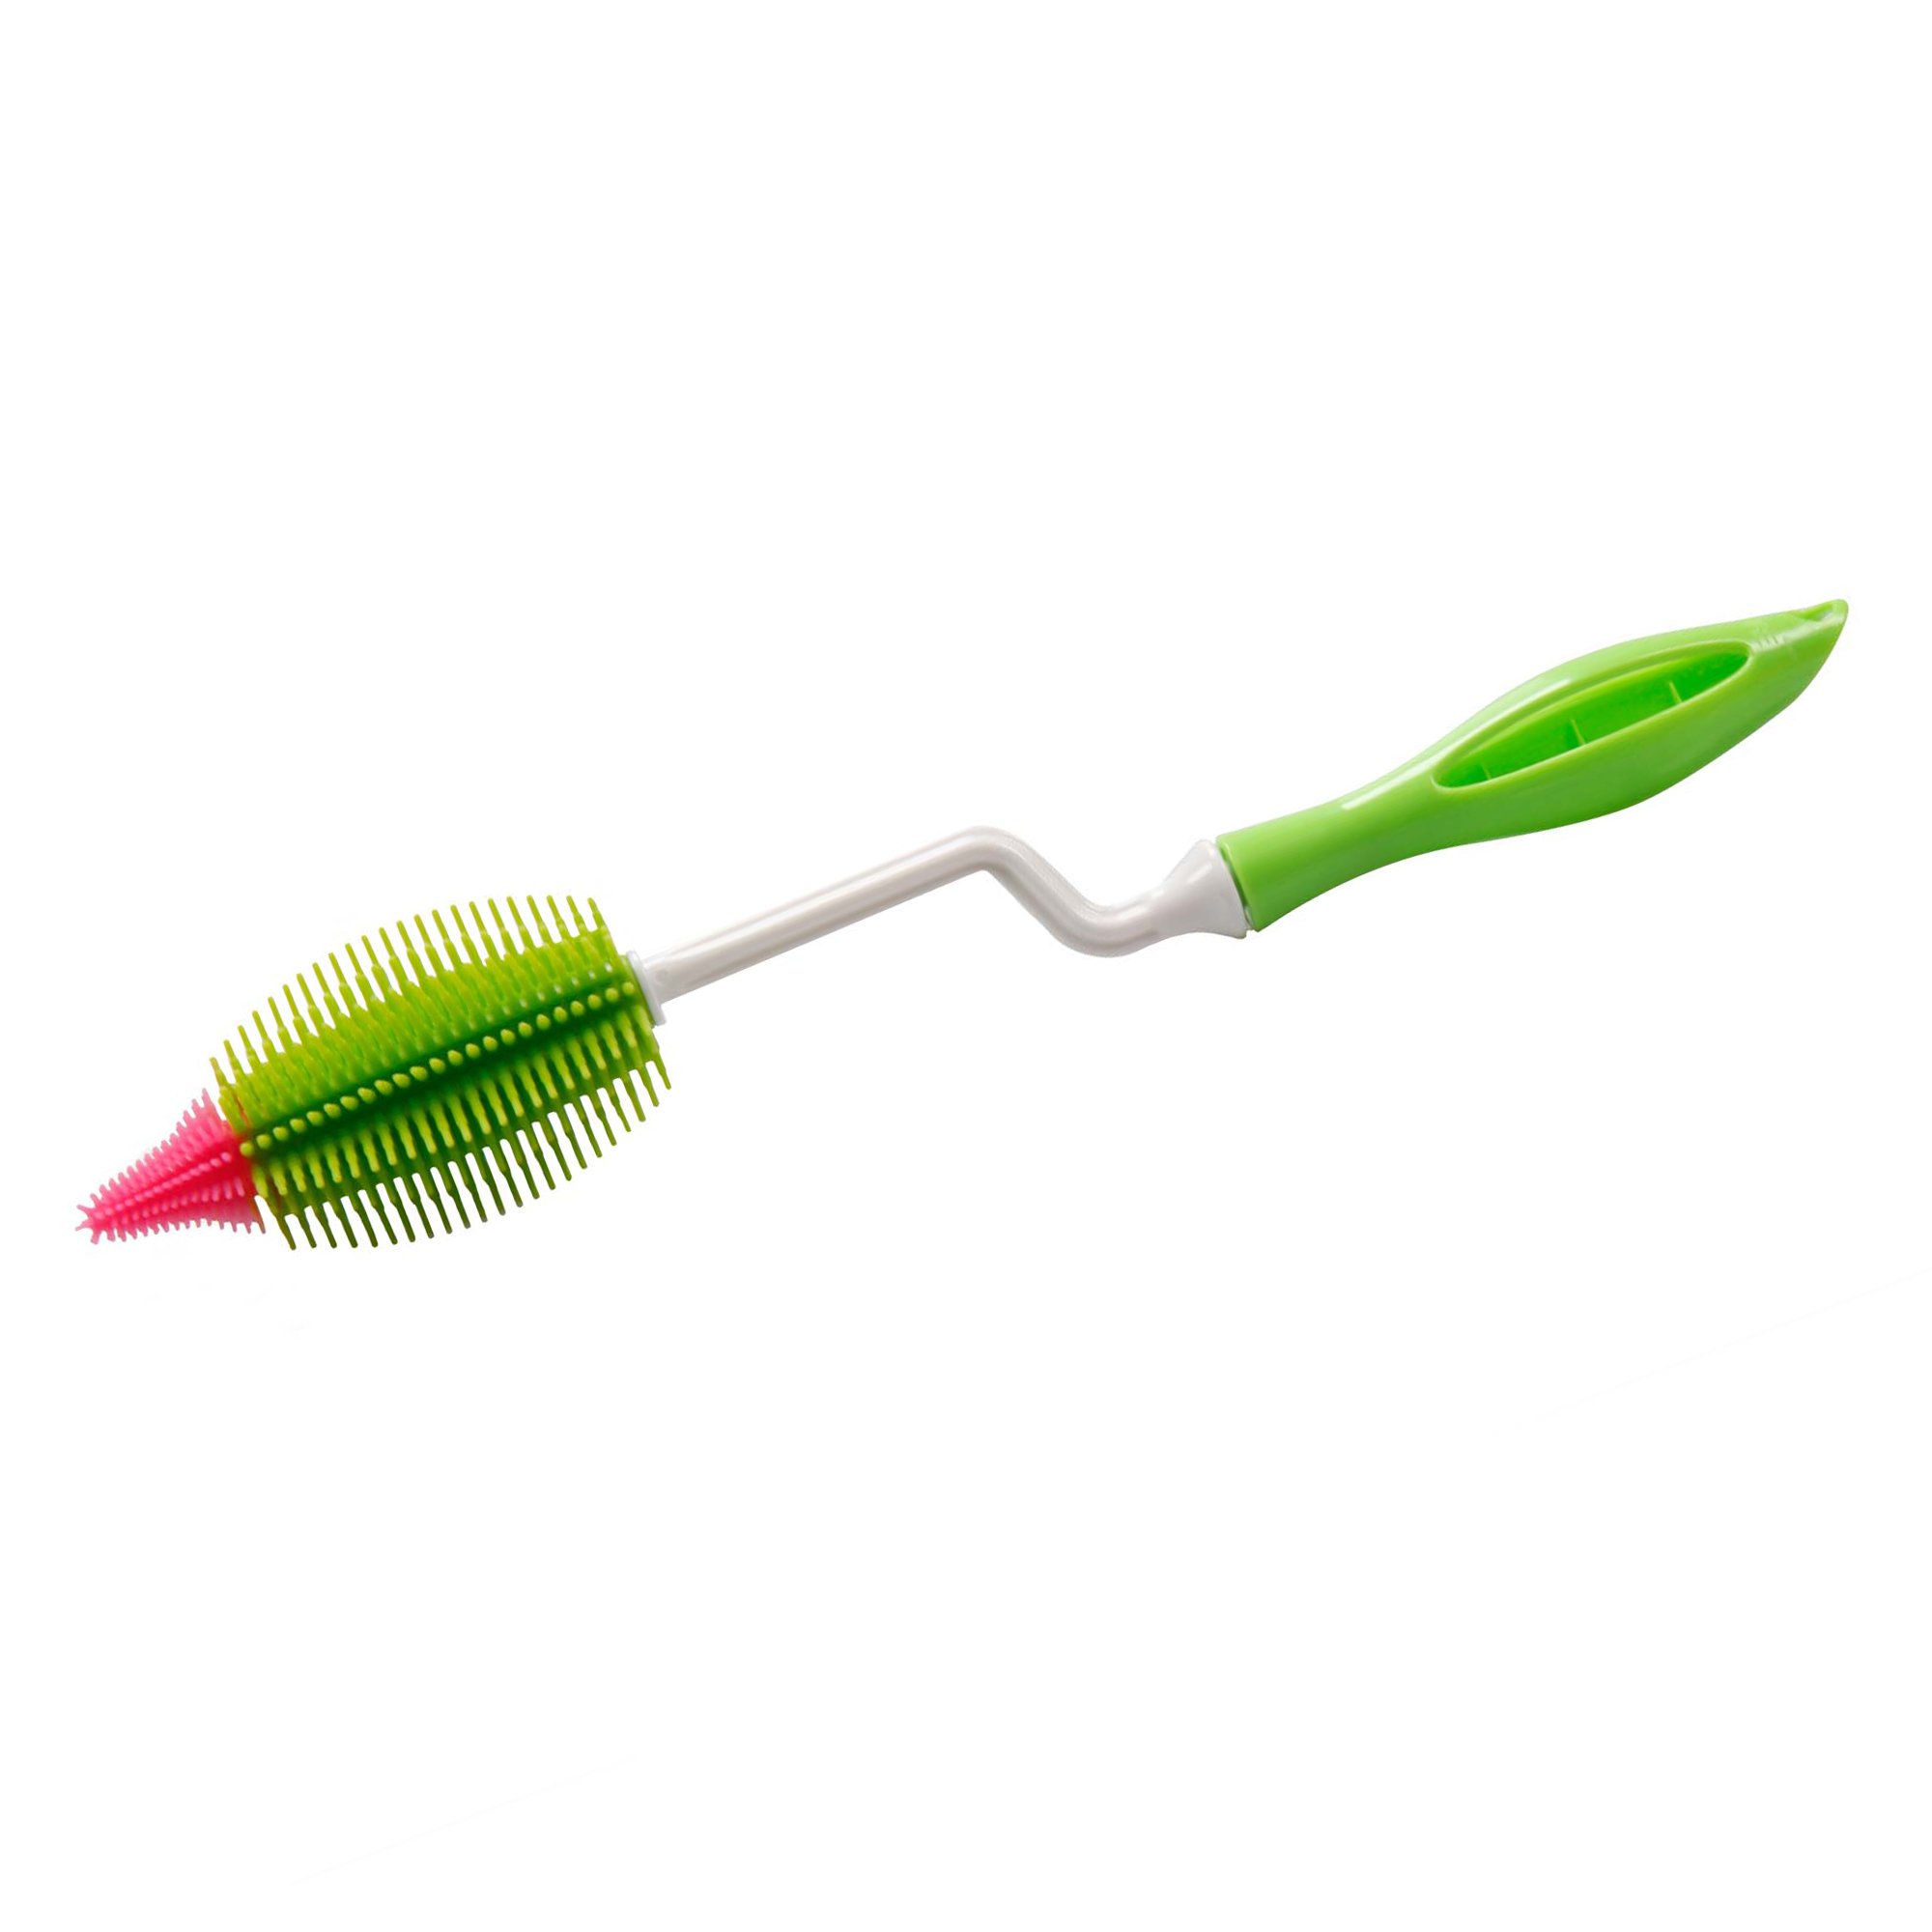 STONELINE® Cepillo de silicona para biberones con mango giratorio 35 cm, verde